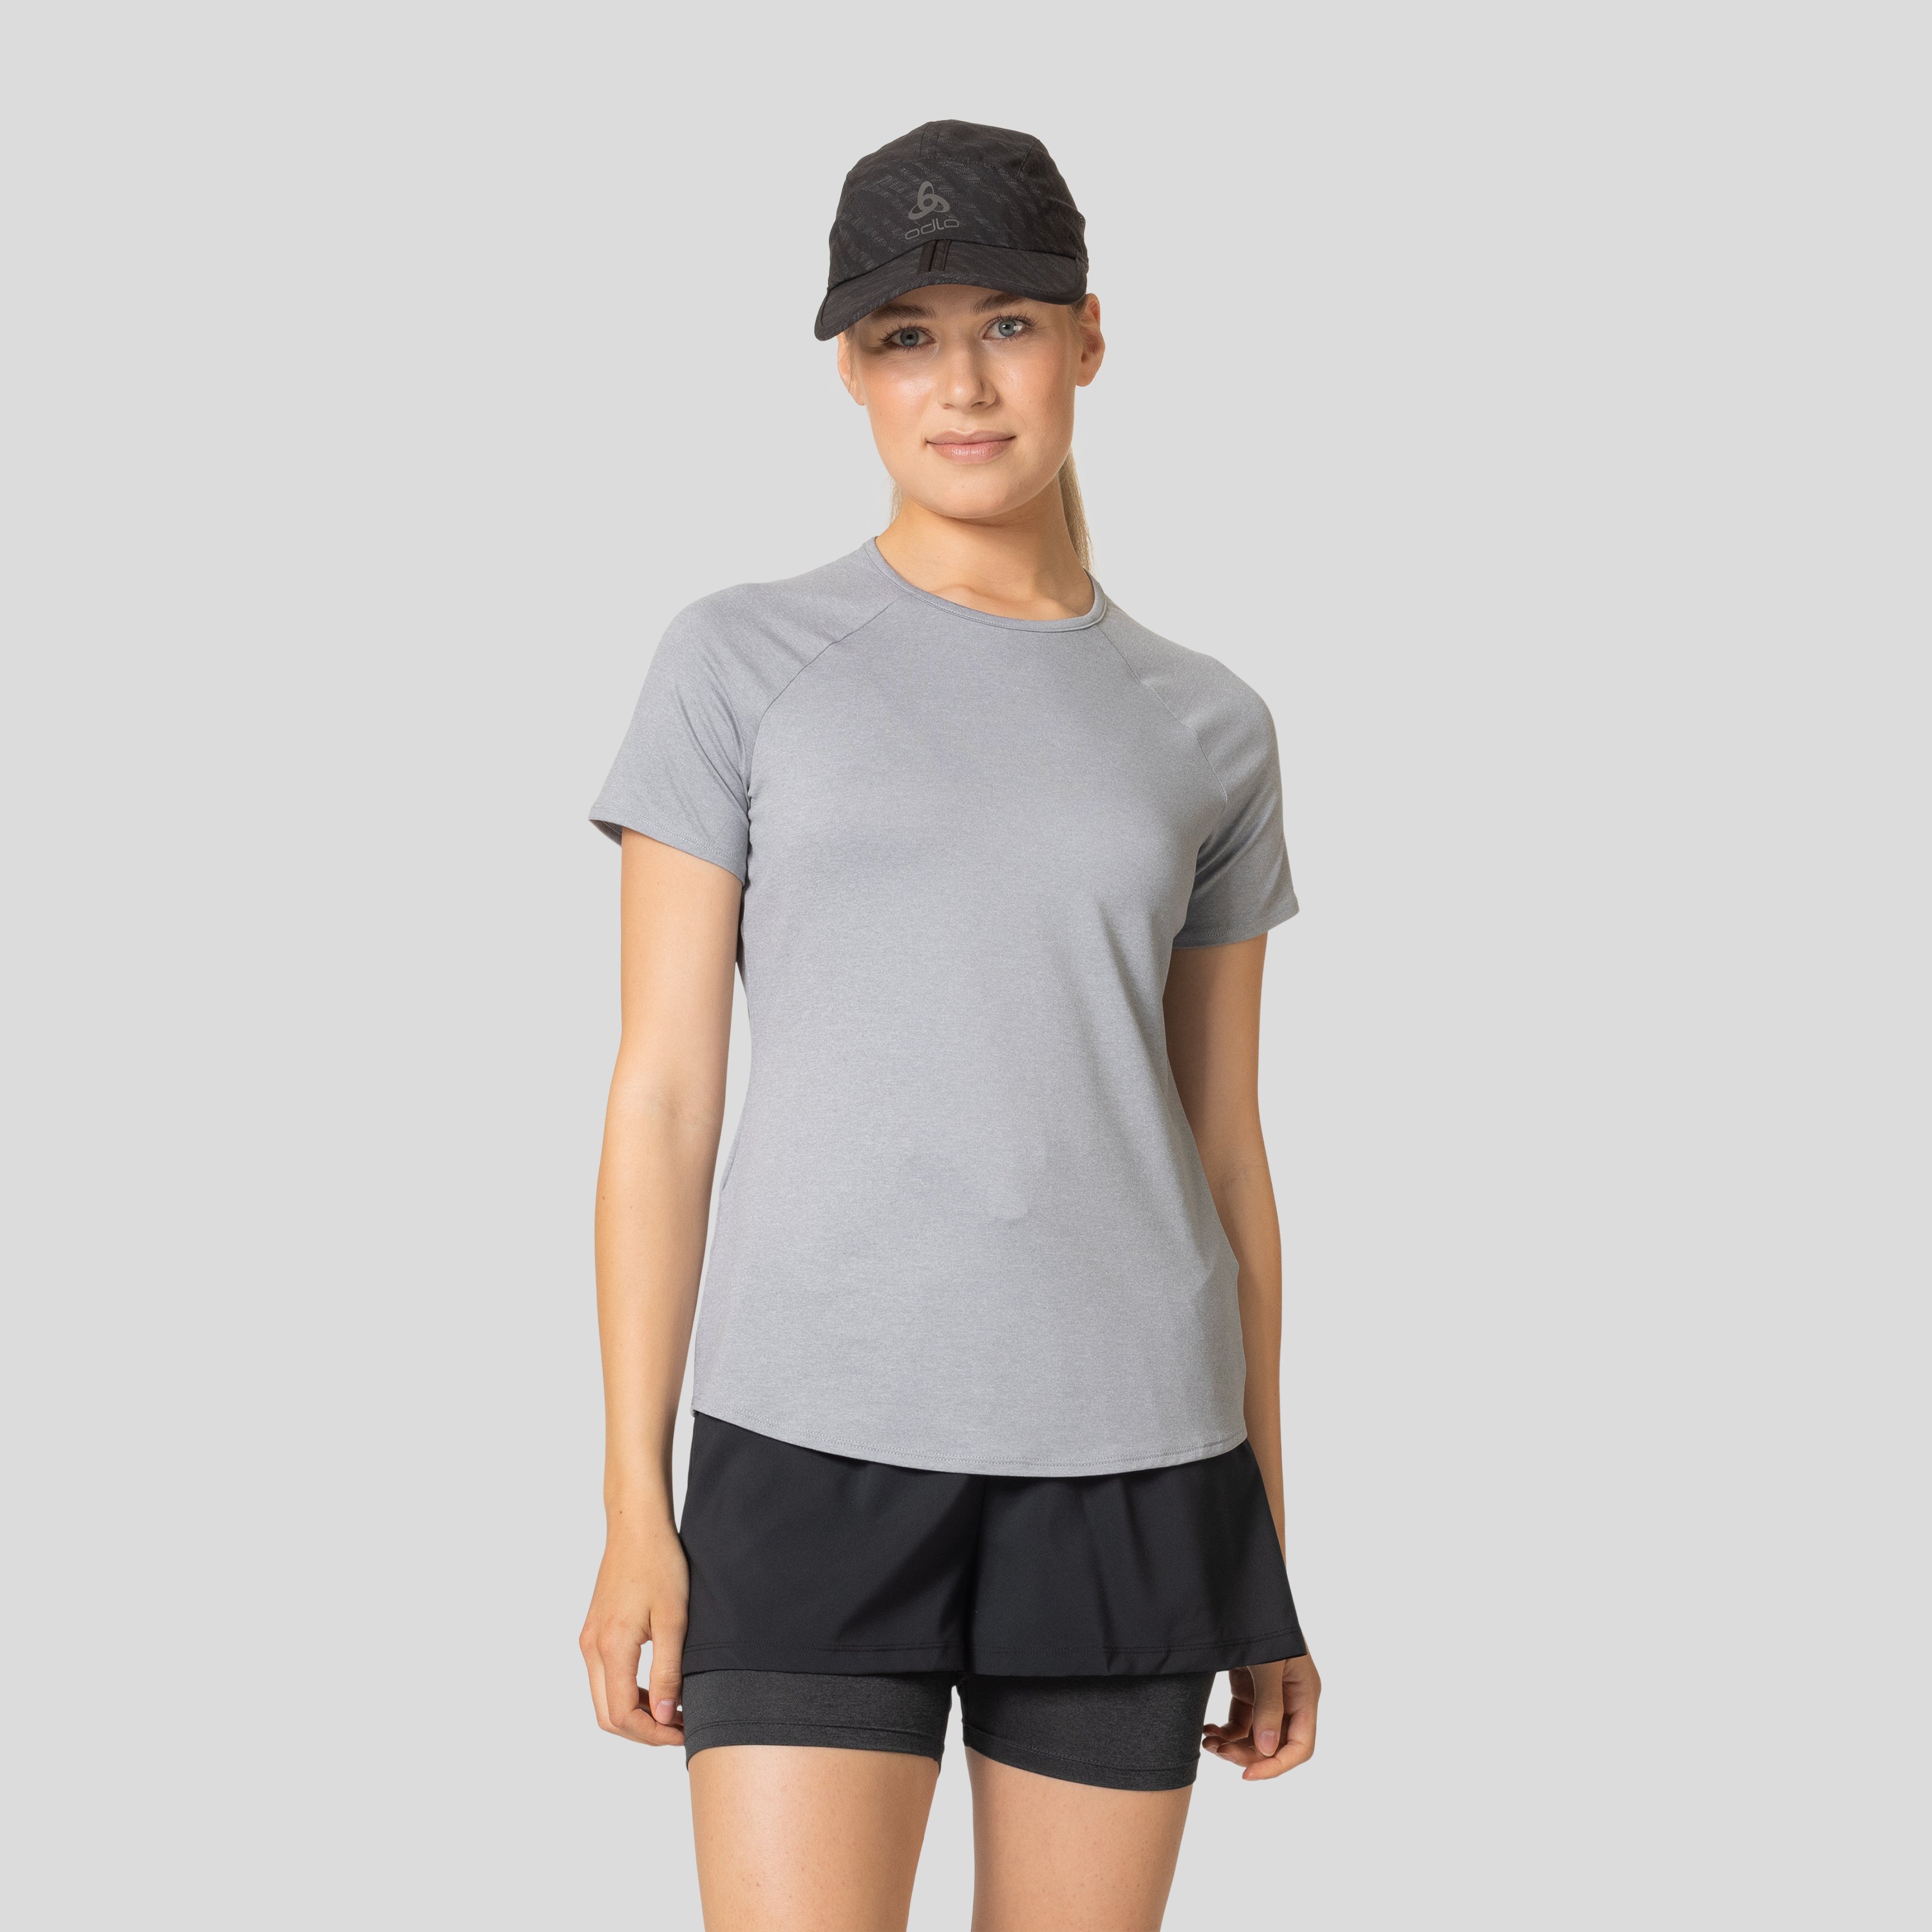 ODLO Active 365 T-Shirt für Damen, M, grau